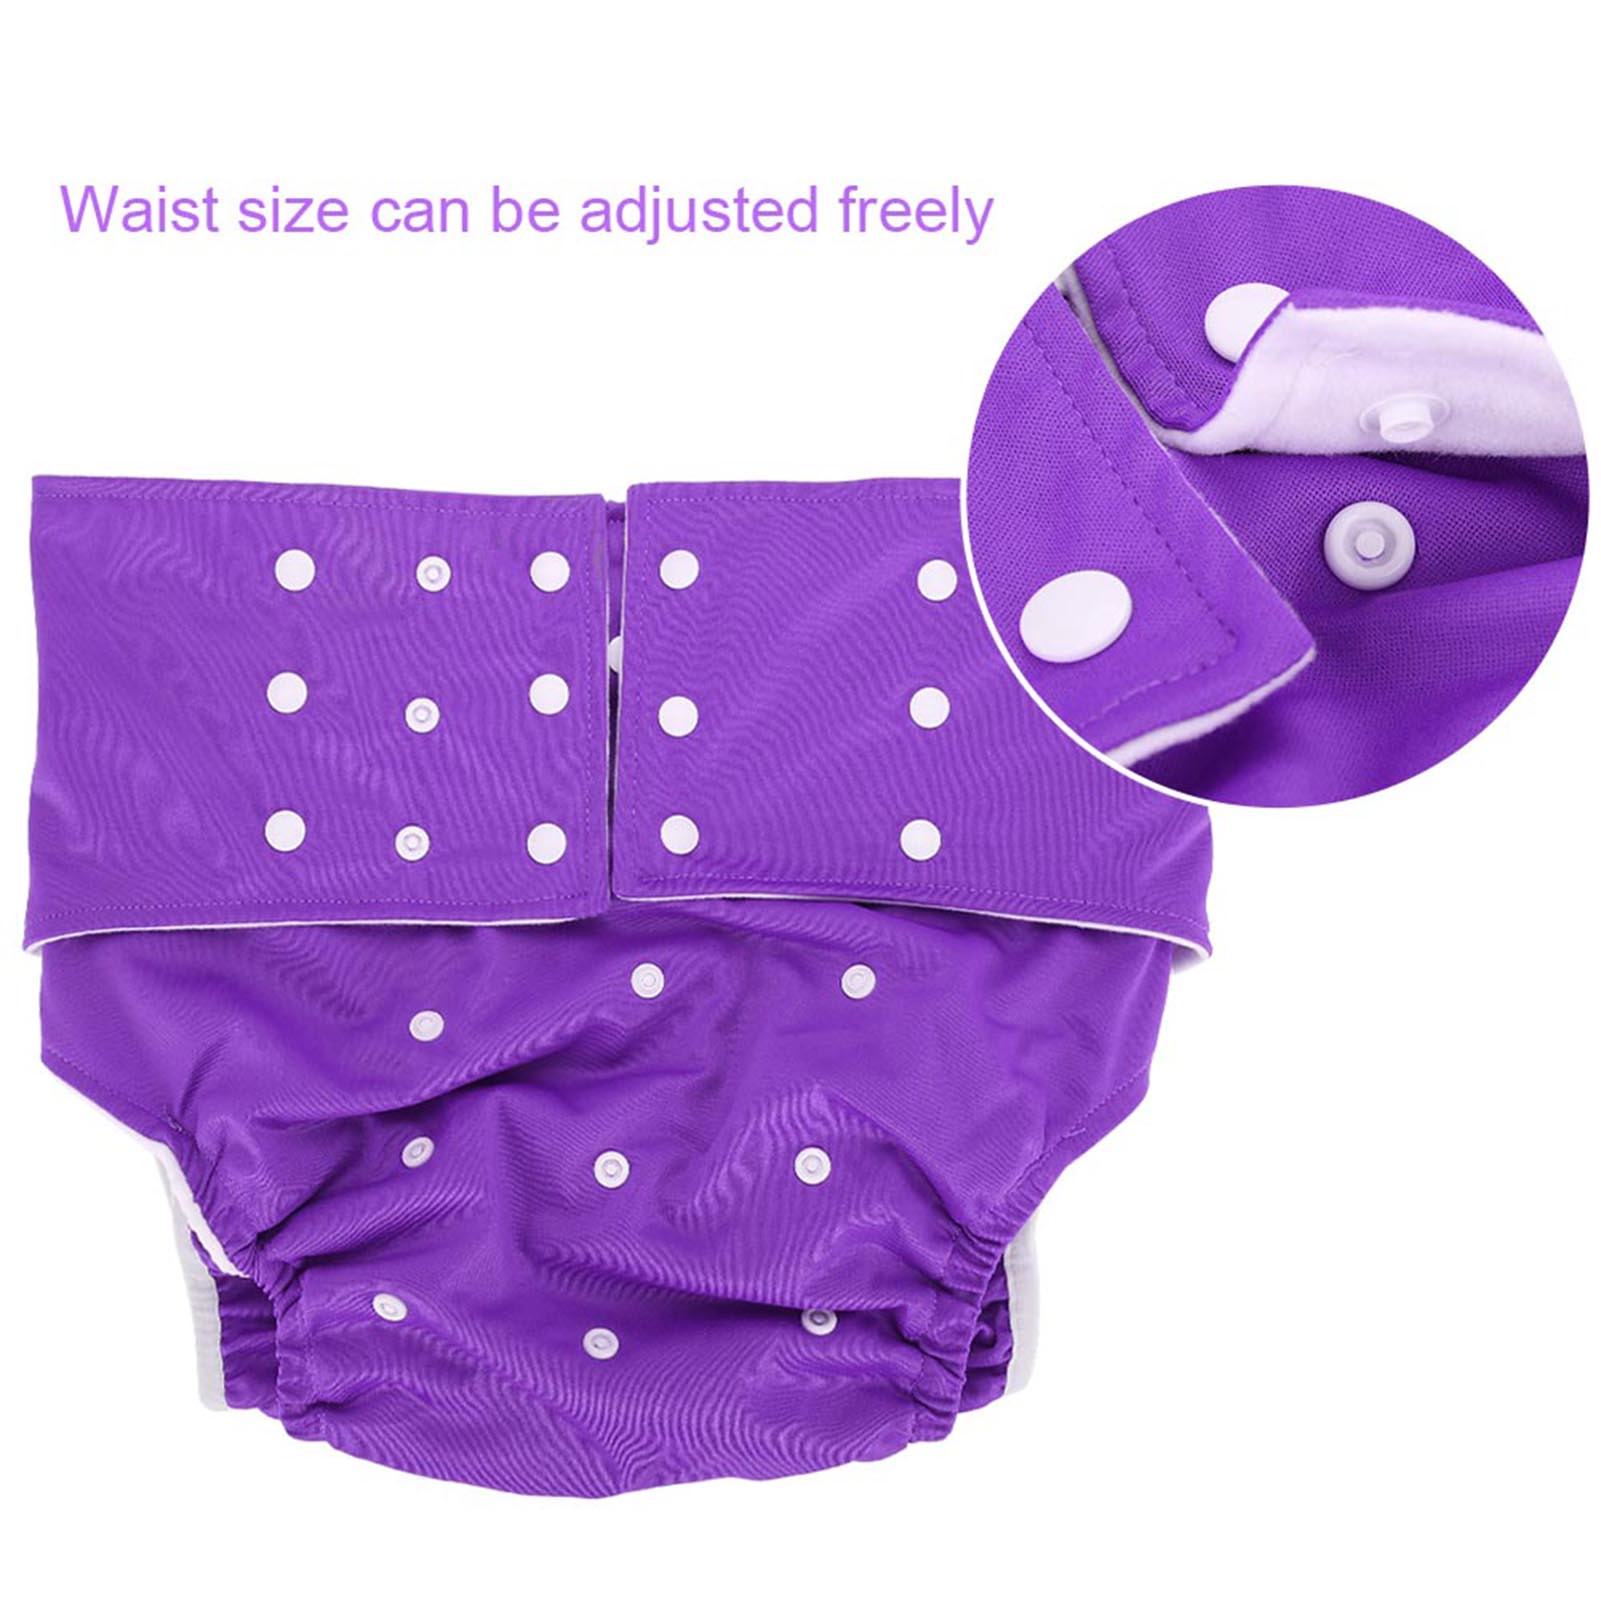 OTVIAP Washable Adult Diaper, Adjustable Adult Nappy 5 Colors Washable Adult Pocket Nappy Cover Adjustable Reusable Diaper Cloth(No Diaper Pad) - image 5 of 8